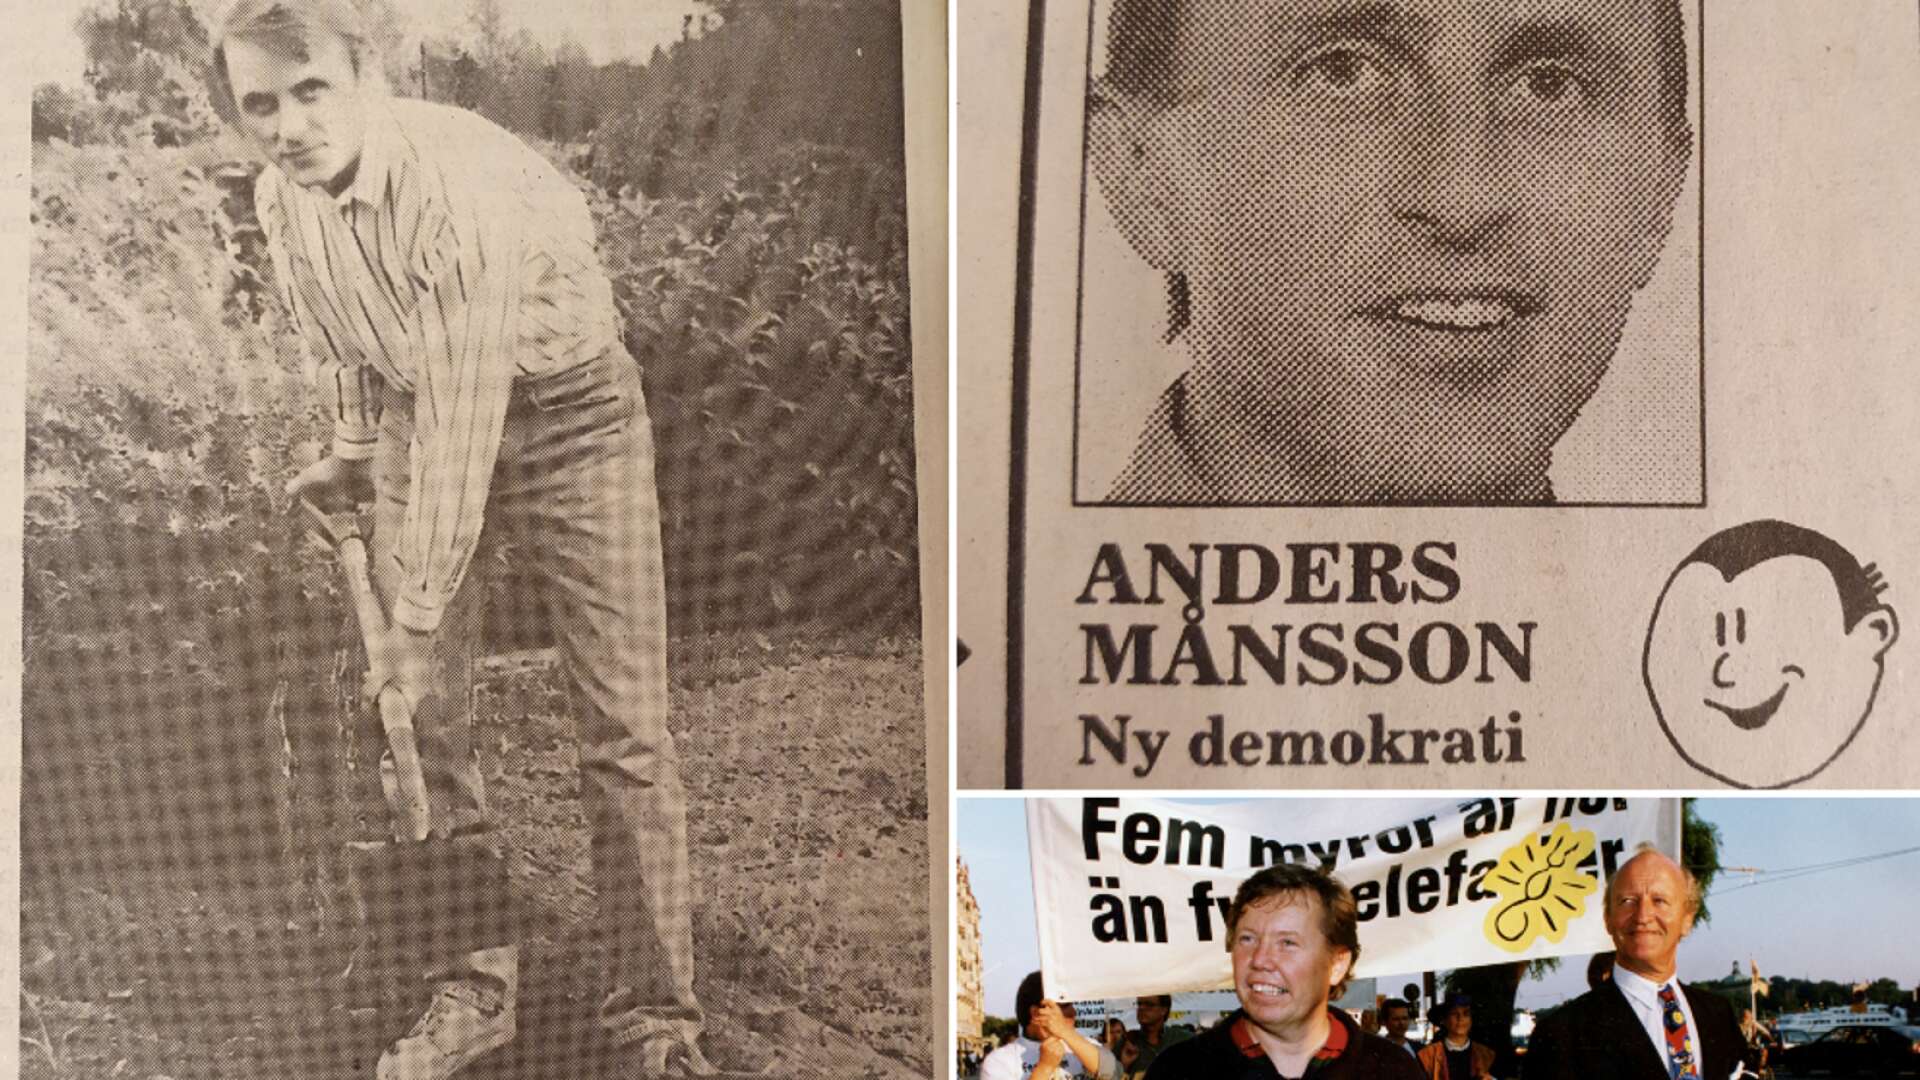 ”Vi ska ’gräva omkring’ bland de etablerade partierna och föra in sunt förnuft i politiken”, sa Månsson till NLT i september 1991. Efter valet tog han plats i Götenes fullmäktige.